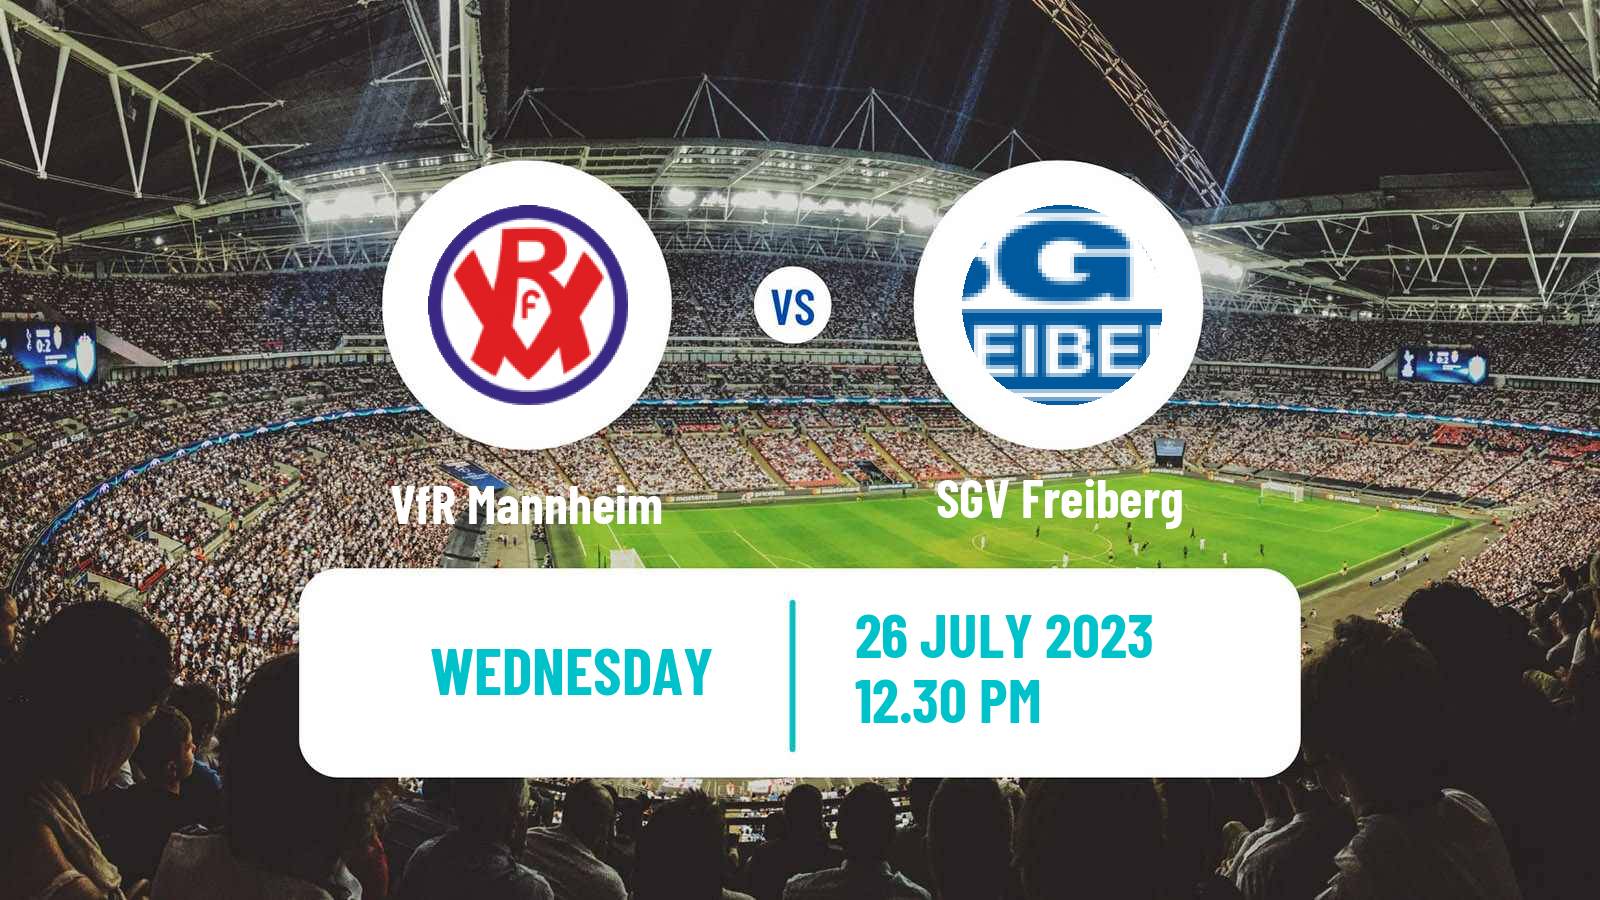 Soccer Club Friendly VfR Mannheim - Freiberg